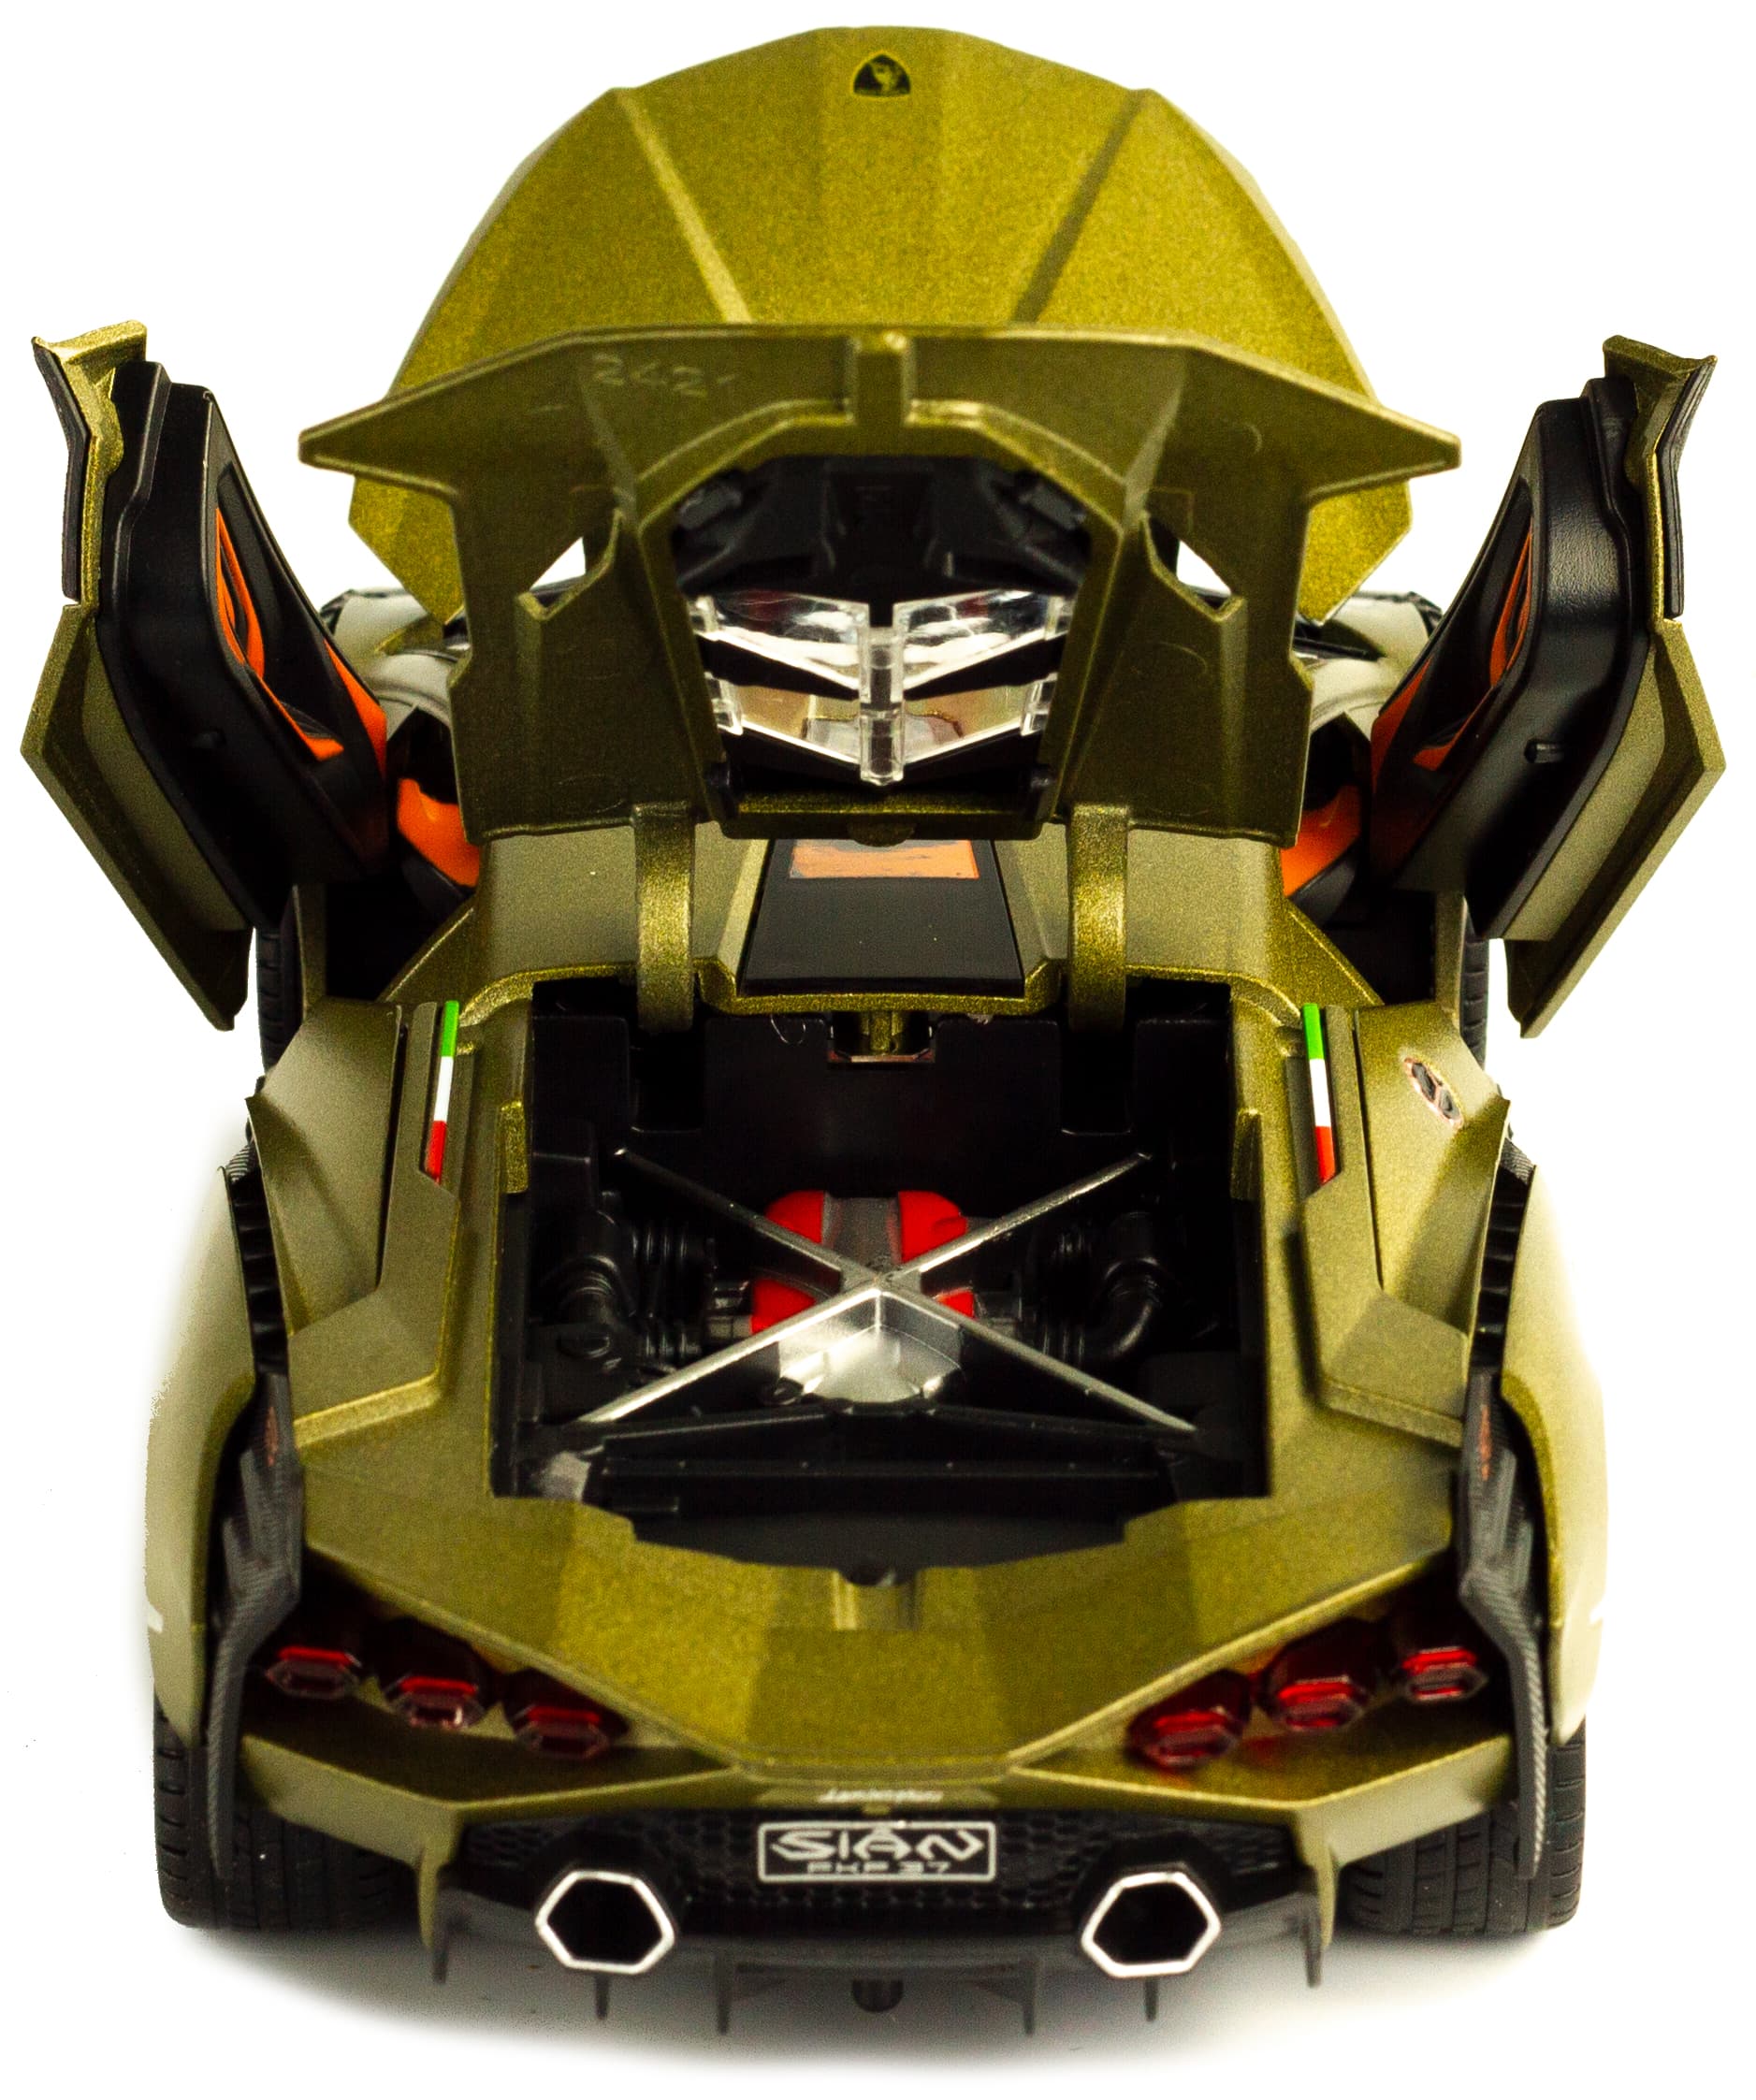 Металлическая машинка Che Zhi 1:24 «Lamborghini Sian» CZ129, 20.8 см. инерционная, свет, звук, в коробке / Микс